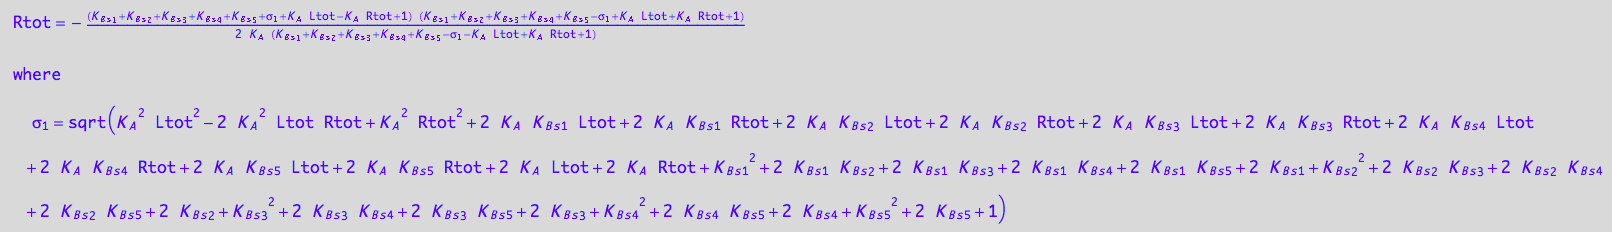 Rtot = -((K_B_s_1 + K_B_s_2 + K_B_s_3 + K_B_s_4 + K_B_s_5 + (K_A^2*Ltot^2 - 2*K_A^2*Ltot*Rtot + K_A^2*Rtot^2 + 2*K_A*K_B_s_1*Ltot + 2*K_A*K_B_s_1*Rtot + 2*K_A*K_B_s_2*Ltot + 2*K_A*K_B_s_2*Rtot + 2*K_A*K_B_s_3*Ltot + 2*K_A*K_B_s_3*Rtot + 2*K_A*K_B_s_4*Ltot + 2*K_A*K_B_s_4*Rtot + 2*K_A*K_B_s_5*Ltot + 2*K_A*K_B_s_5*Rtot + 2*K_A*Ltot + 2*K_A*Rtot + K_B_s_1^2 + 2*K_B_s_1*K_B_s_2 + 2*K_B_s_1*K_B_s_3 + 2*K_B_s_1*K_B_s_4 + 2*K_B_s_1*K_B_s_5 + 2*K_B_s_1 + K_B_s_2^2 + 2*K_B_s_2*K_B_s_3 + 2*K_B_s_2*K_B_s_4 + 2*K_B_s_2*K_B_s_5 + 2*K_B_s_2 + K_B_s_3^2 + 2*K_B_s_3*K_B_s_4 + 2*K_B_s_3*K_B_s_5 + 2*K_B_s_3 + K_B_s_4^2 + 2*K_B_s_4*K_B_s_5 + 2*K_B_s_4 + K_B_s_5^2 + 2*K_B_s_5 + 1)^(1/2) + K_A*Ltot - K_A*Rtot + 1)*(K_B_s_1 + K_B_s_2 + K_B_s_3 + K_B_s_4 + K_B_s_5 - (K_A^2*Ltot^2 - 2*K_A^2*Ltot*Rtot + K_A^2*Rtot^2 + 2*K_A*K_B_s_1*Ltot + 2*K_A*K_B_s_1*Rtot + 2*K_A*K_B_s_2*Ltot + 2*K_A*K_B_s_2*Rtot + 2*K_A*K_B_s_3*Ltot + 2*K_A*K_B_s_3*Rtot + 2*K_A*K_B_s_4*Ltot + 2*K_A*K_B_s_4*Rtot + 2*K_A*K_B_s_5*Ltot + 2*K_A*K_B_s_5*Rtot + 2*K_A*Ltot + 2*K_A*Rtot + K_B_s_1^2 + 2*K_B_s_1*K_B_s_2 + 2*K_B_s_1*K_B_s_3 + 2*K_B_s_1*K_B_s_4 + 2*K_B_s_1*K_B_s_5 + 2*K_B_s_1 + K_B_s_2^2 + 2*K_B_s_2*K_B_s_3 + 2*K_B_s_2*K_B_s_4 + 2*K_B_s_2*K_B_s_5 + 2*K_B_s_2 + K_B_s_3^2 + 2*K_B_s_3*K_B_s_4 + 2*K_B_s_3*K_B_s_5 + 2*K_B_s_3 + K_B_s_4^2 + 2*K_B_s_4*K_B_s_5 + 2*K_B_s_4 + K_B_s_5^2 + 2*K_B_s_5 + 1)^(1/2) + K_A*Ltot + K_A*Rtot + 1))/(2*K_A*(K_B_s_1 + K_B_s_2 + K_B_s_3 + K_B_s_4 + K_B_s_5 - (K_A^2*Ltot^2 - 2*K_A^2*Ltot*Rtot + K_A^2*Rtot^2 + 2*K_A*K_B_s_1*Ltot + 2*K_A*K_B_s_1*Rtot + 2*K_A*K_B_s_2*Ltot + 2*K_A*K_B_s_2*Rtot + 2*K_A*K_B_s_3*Ltot + 2*K_A*K_B_s_3*Rtot + 2*K_A*K_B_s_4*Ltot + 2*K_A*K_B_s_4*Rtot + 2*K_A*K_B_s_5*Ltot + 2*K_A*K_B_s_5*Rtot + 2*K_A*Ltot + 2*K_A*Rtot + K_B_s_1^2 + 2*K_B_s_1*K_B_s_2 + 2*K_B_s_1*K_B_s_3 + 2*K_B_s_1*K_B_s_4 + 2*K_B_s_1*K_B_s_5 + 2*K_B_s_1 + K_B_s_2^2 + 2*K_B_s_2*K_B_s_3 + 2*K_B_s_2*K_B_s_4 + 2*K_B_s_2*K_B_s_5 + 2*K_B_s_2 + K_B_s_3^2 + 2*K_B_s_3*K_B_s_4 + 2*K_B_s_3*K_B_s_5 + 2*K_B_s_3 + K_B_s_4^2 + 2*K_B_s_4*K_B_s_5 + 2*K_B_s_4 + K_B_s_5^2 + 2*K_B_s_5 + 1)^(1/2) - K_A*Ltot + K_A*Rtot + 1))